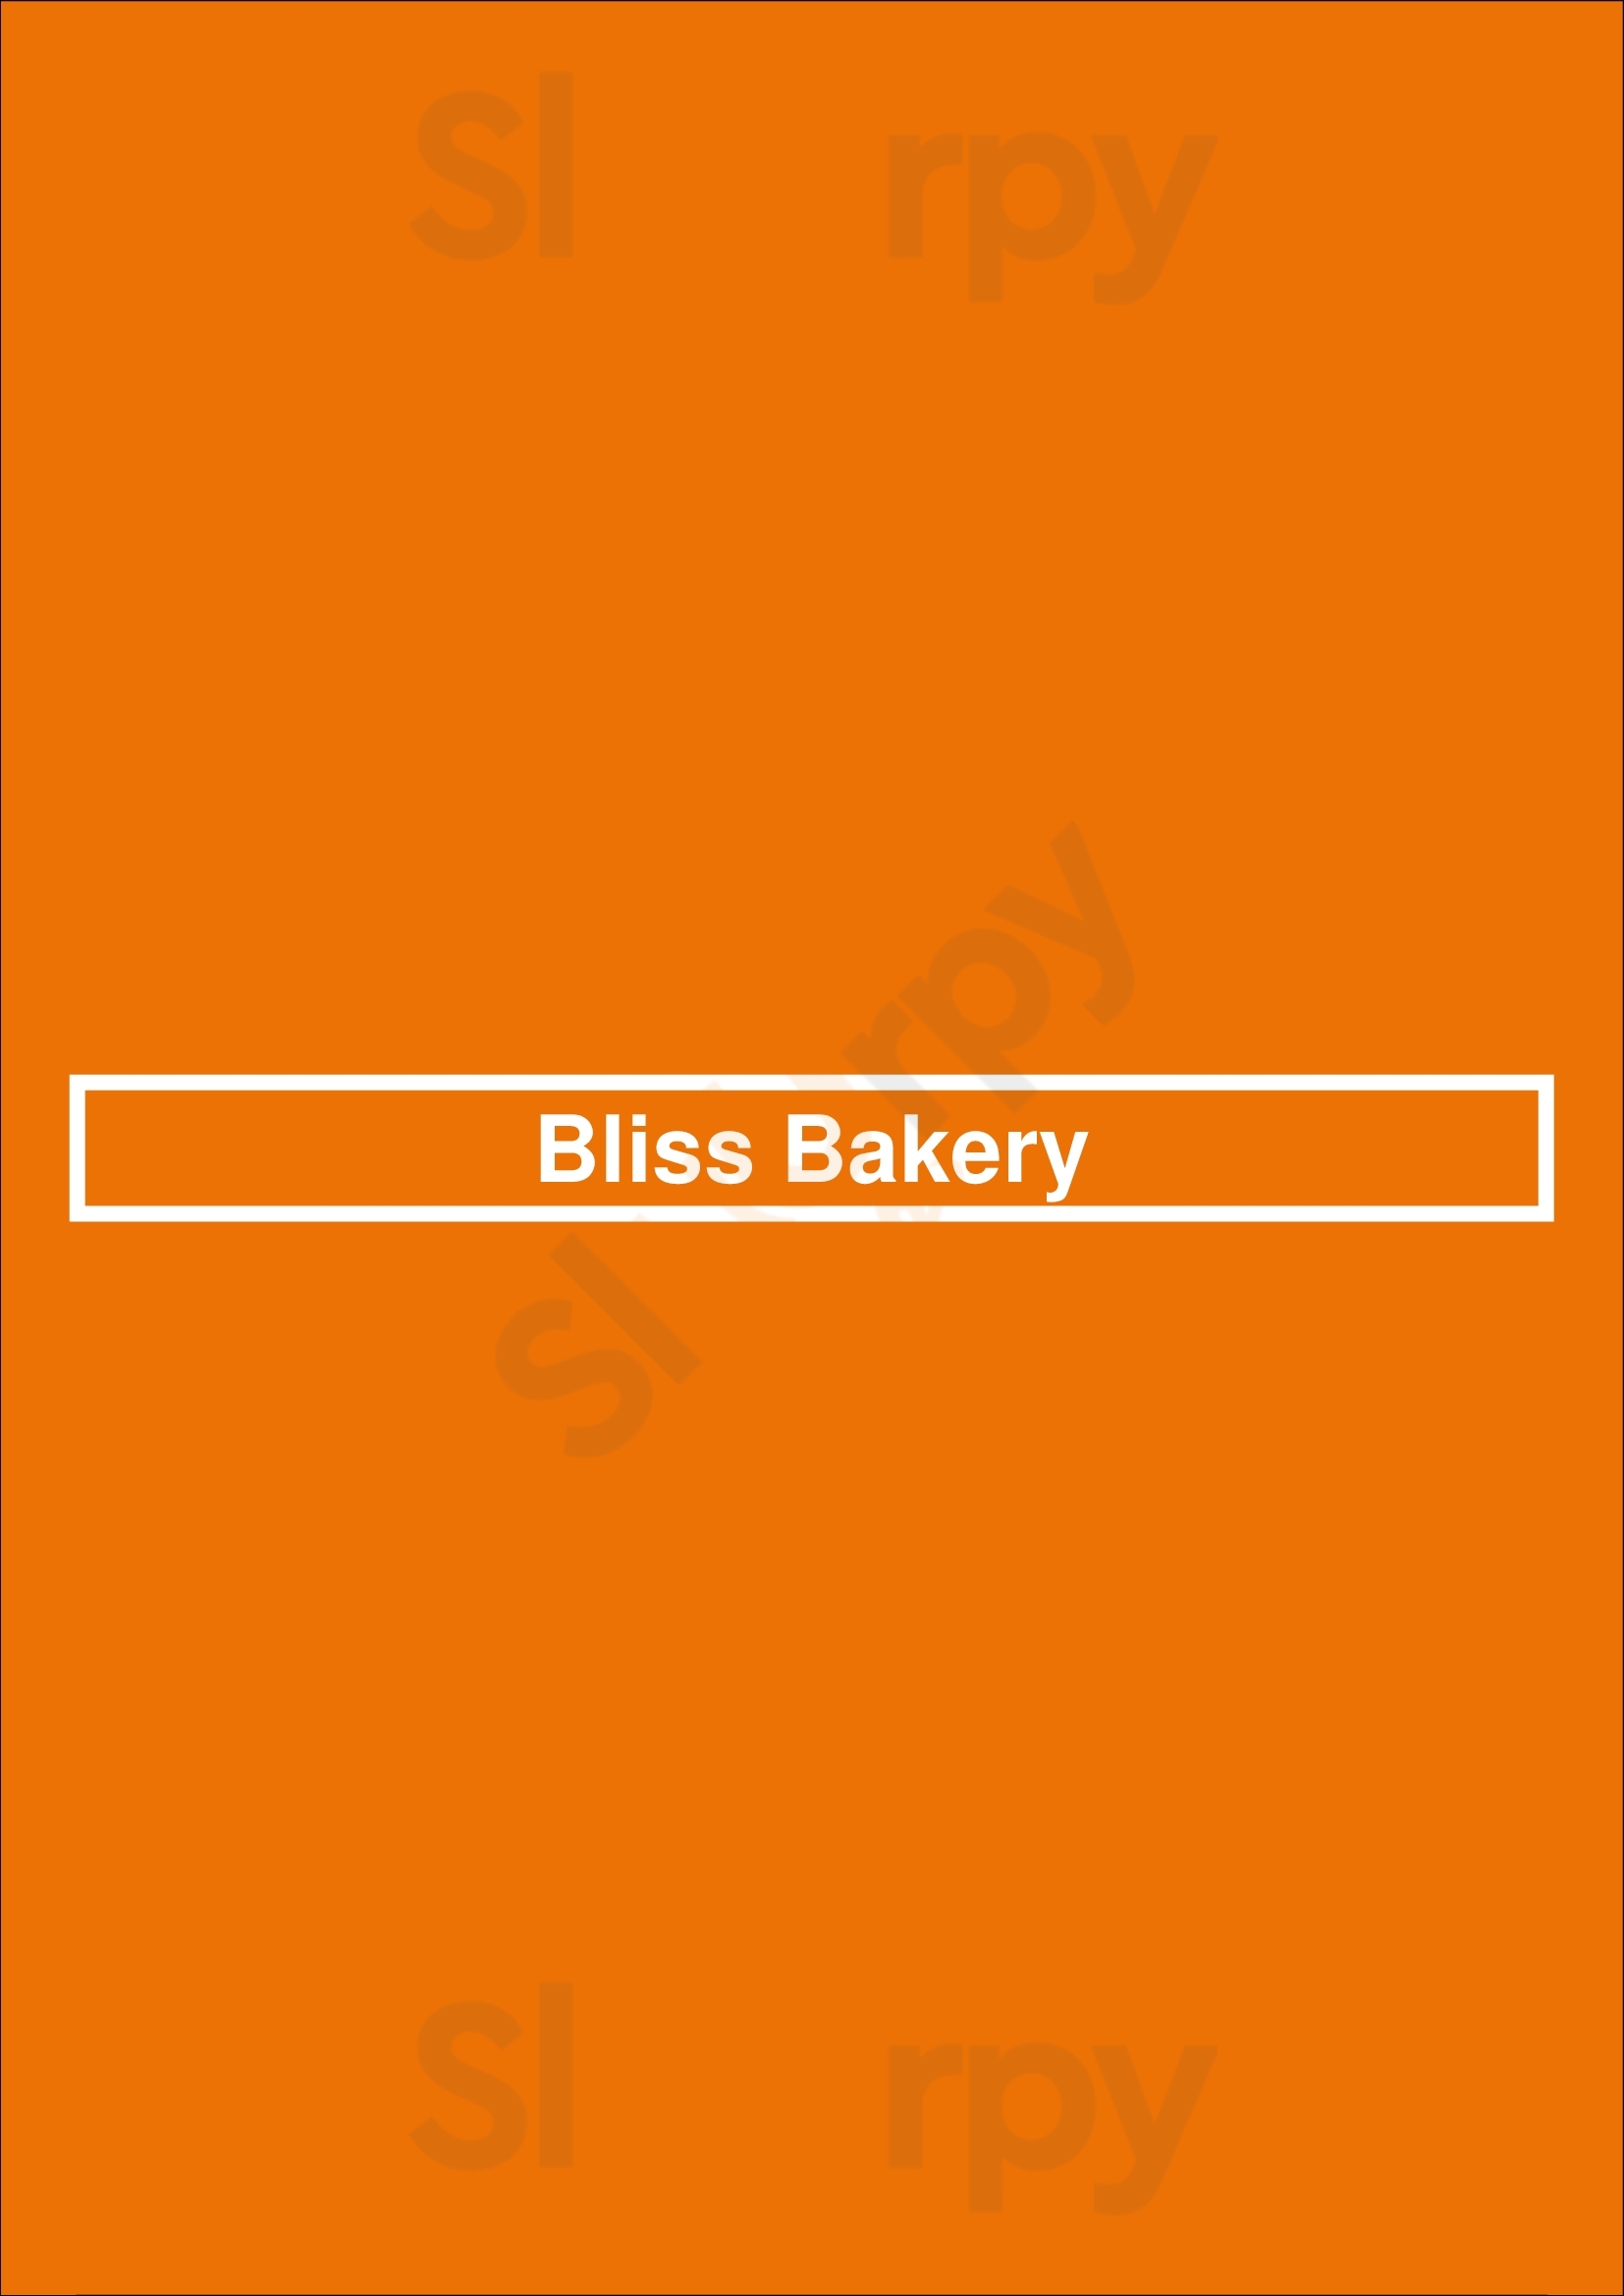 Bliss Bakery Virginia Beach Menu - 1